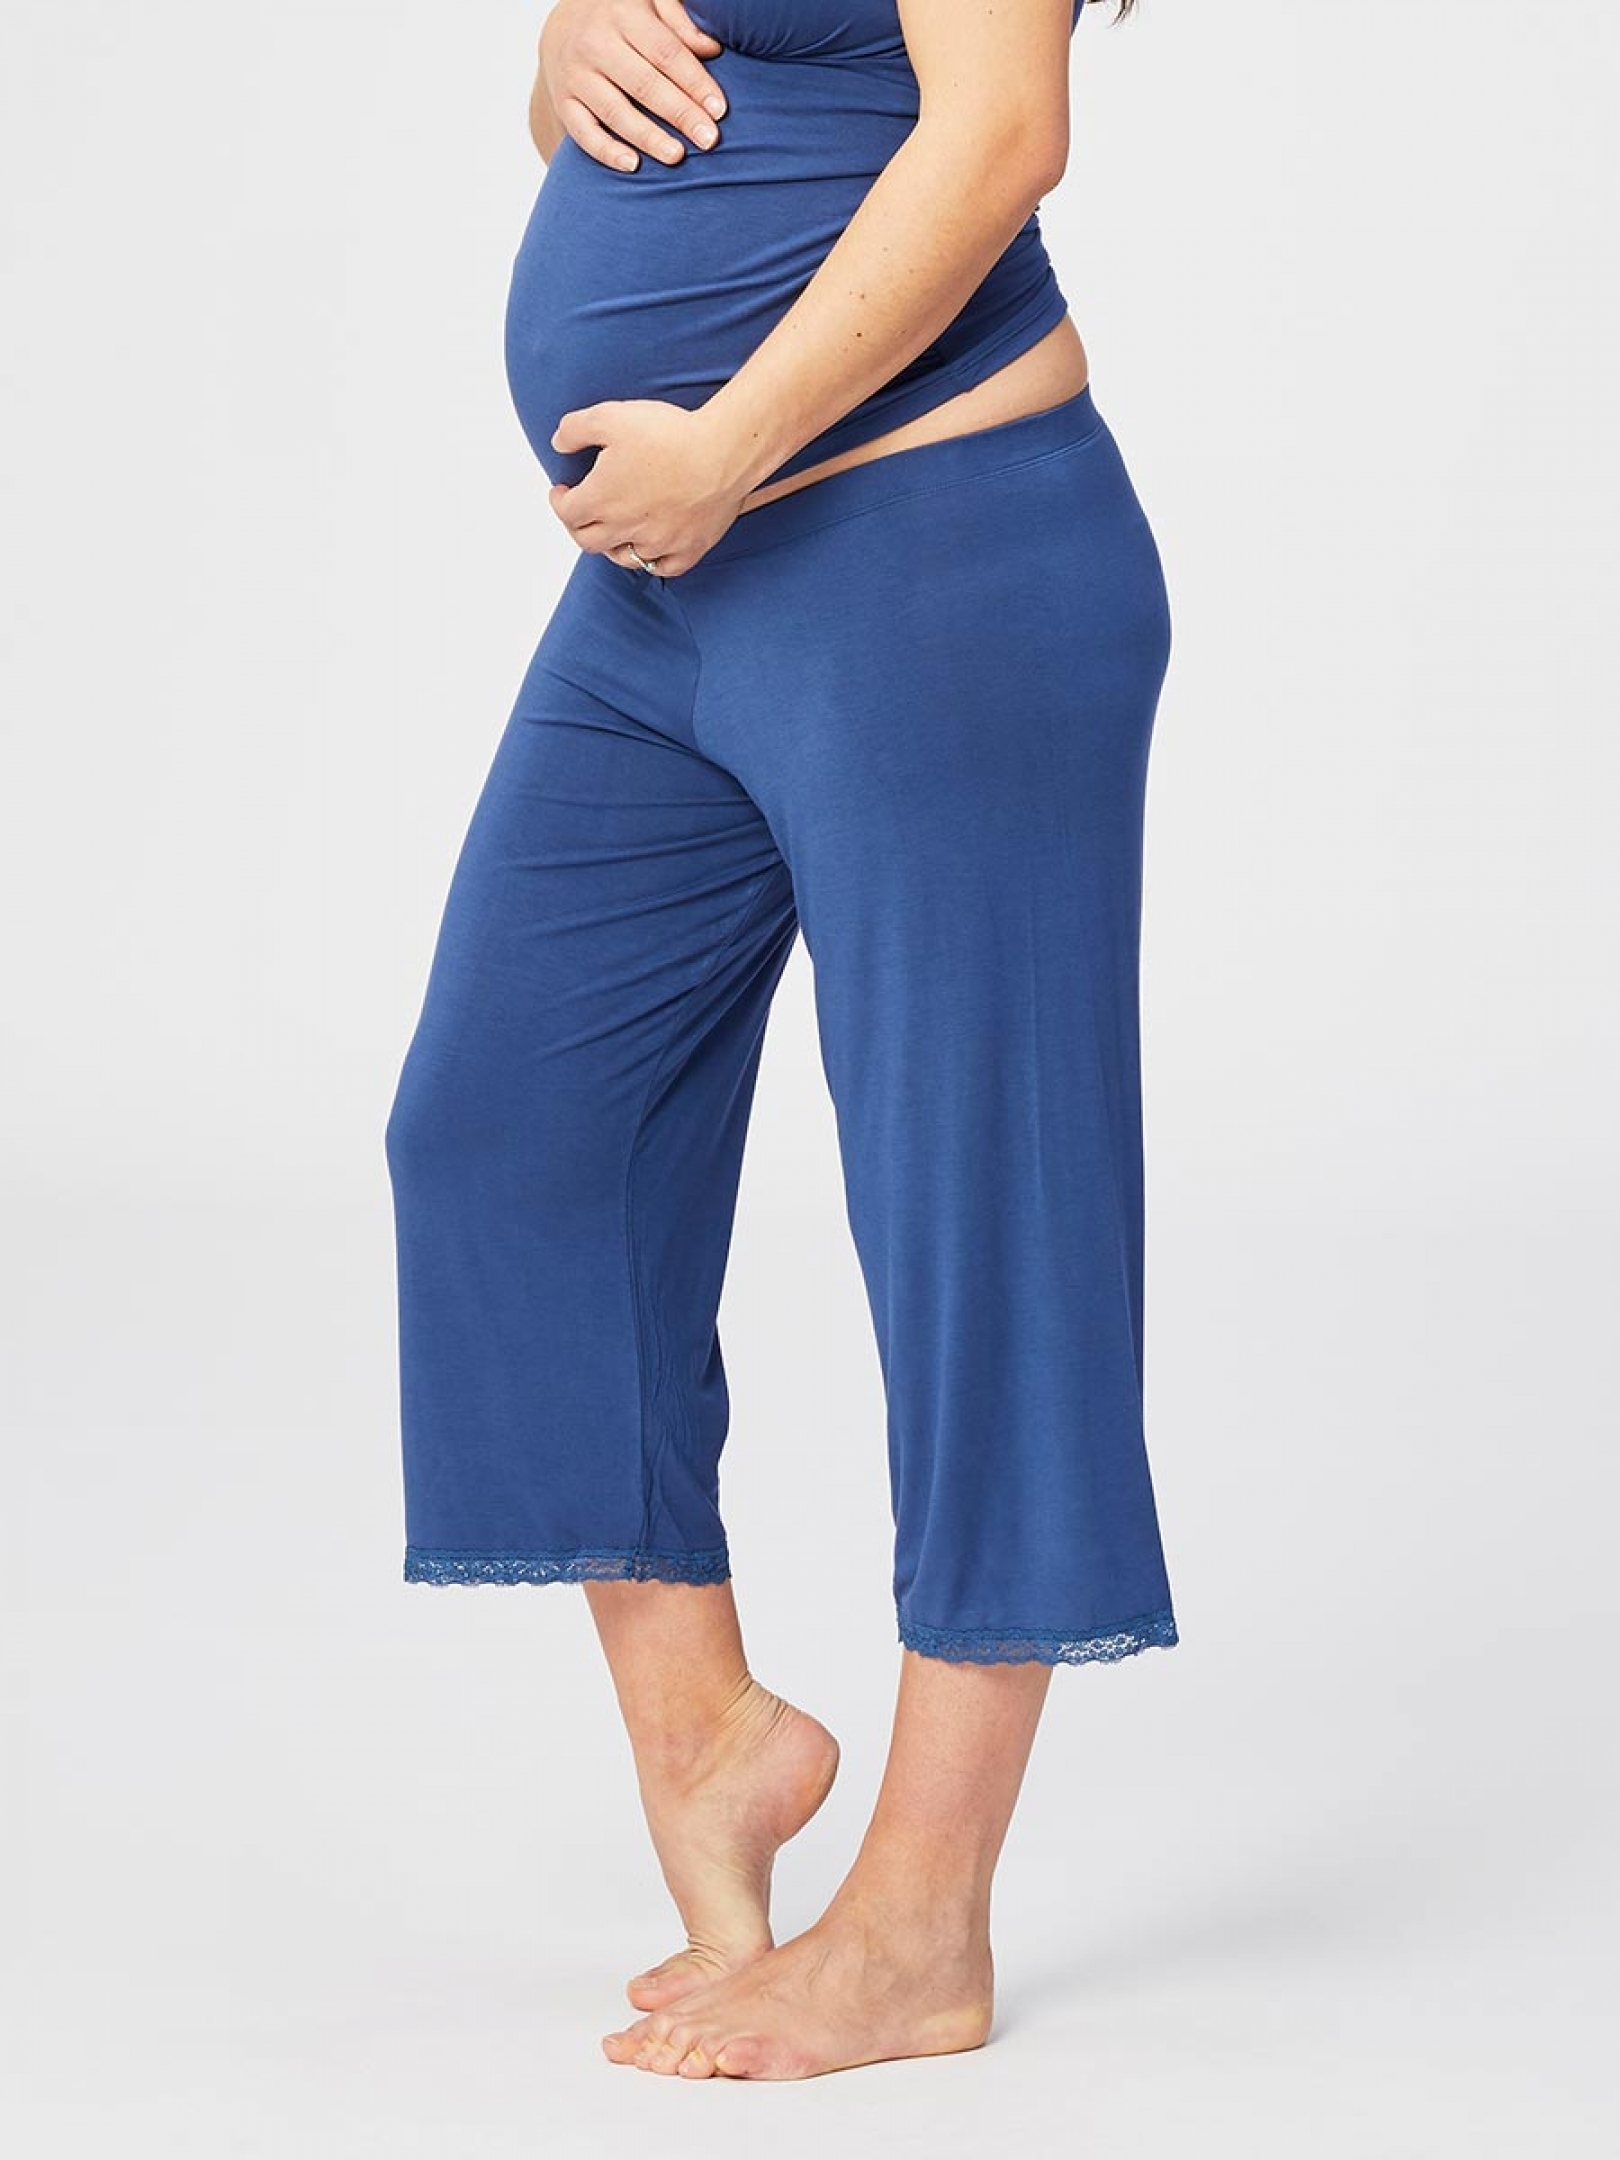 Blue Berry Torte Cotton Maternity Pajamas